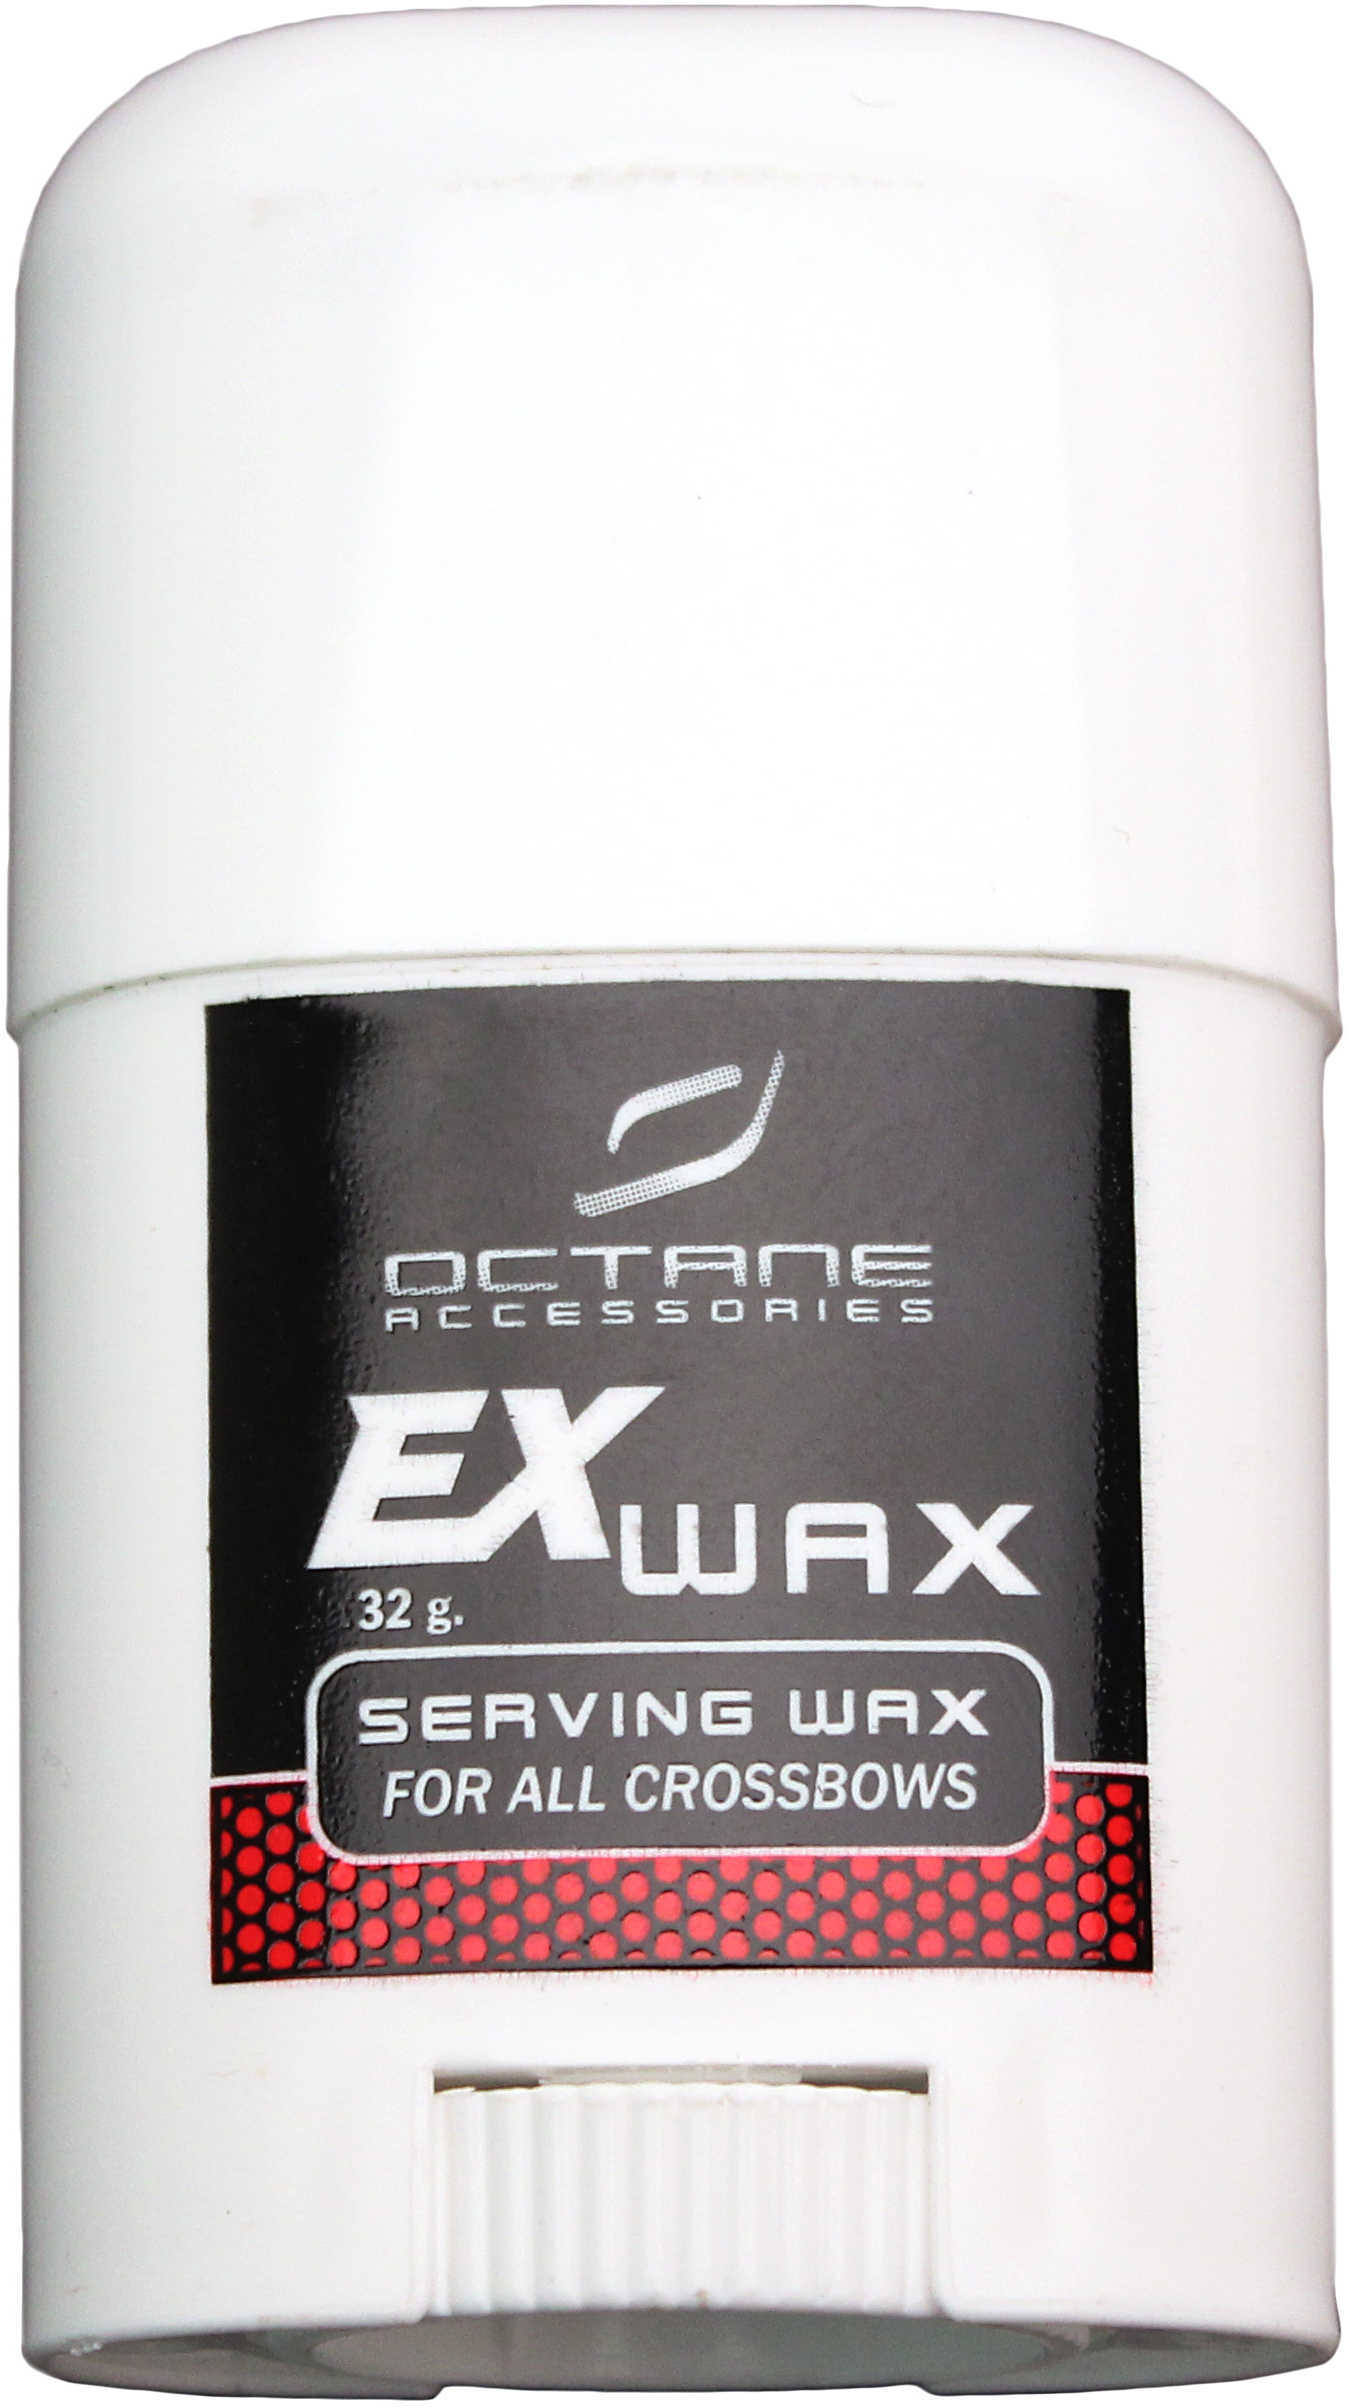 Excalibur Serving Wax Md: 2009